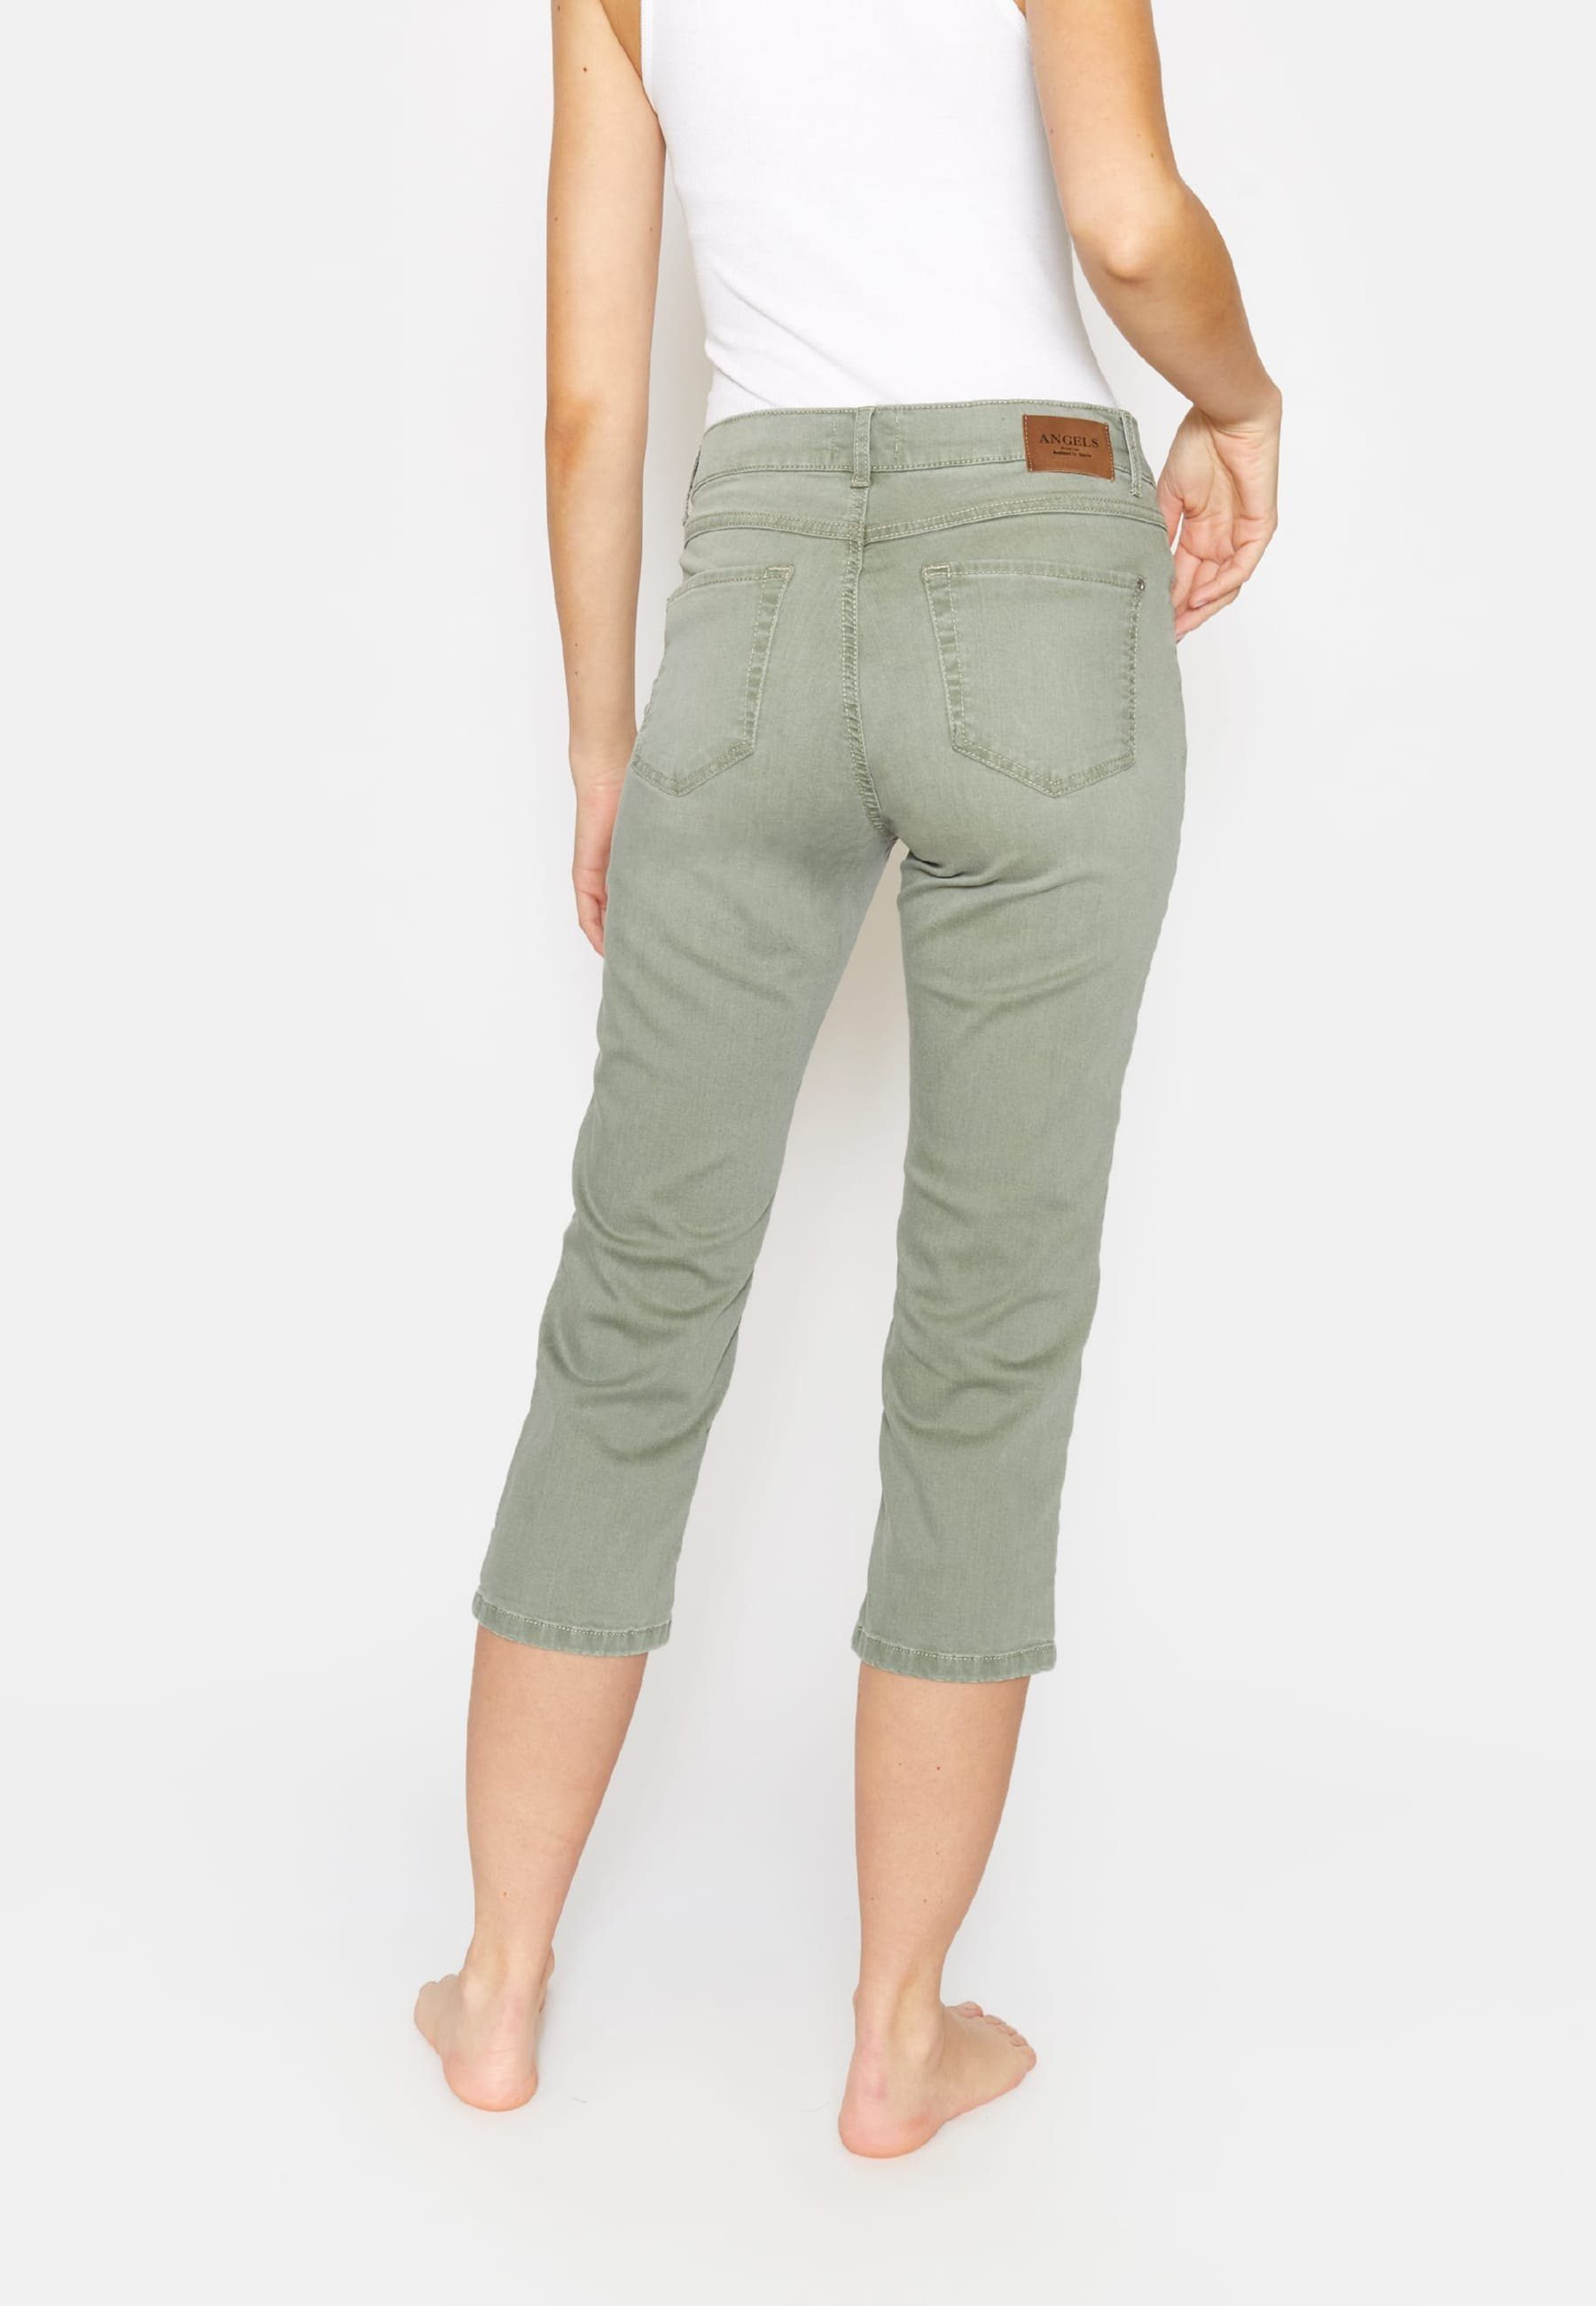 Beinumschlag mit Straight-Jeans Jeans ANGELS Cici grün mit Label-Applikationen TU